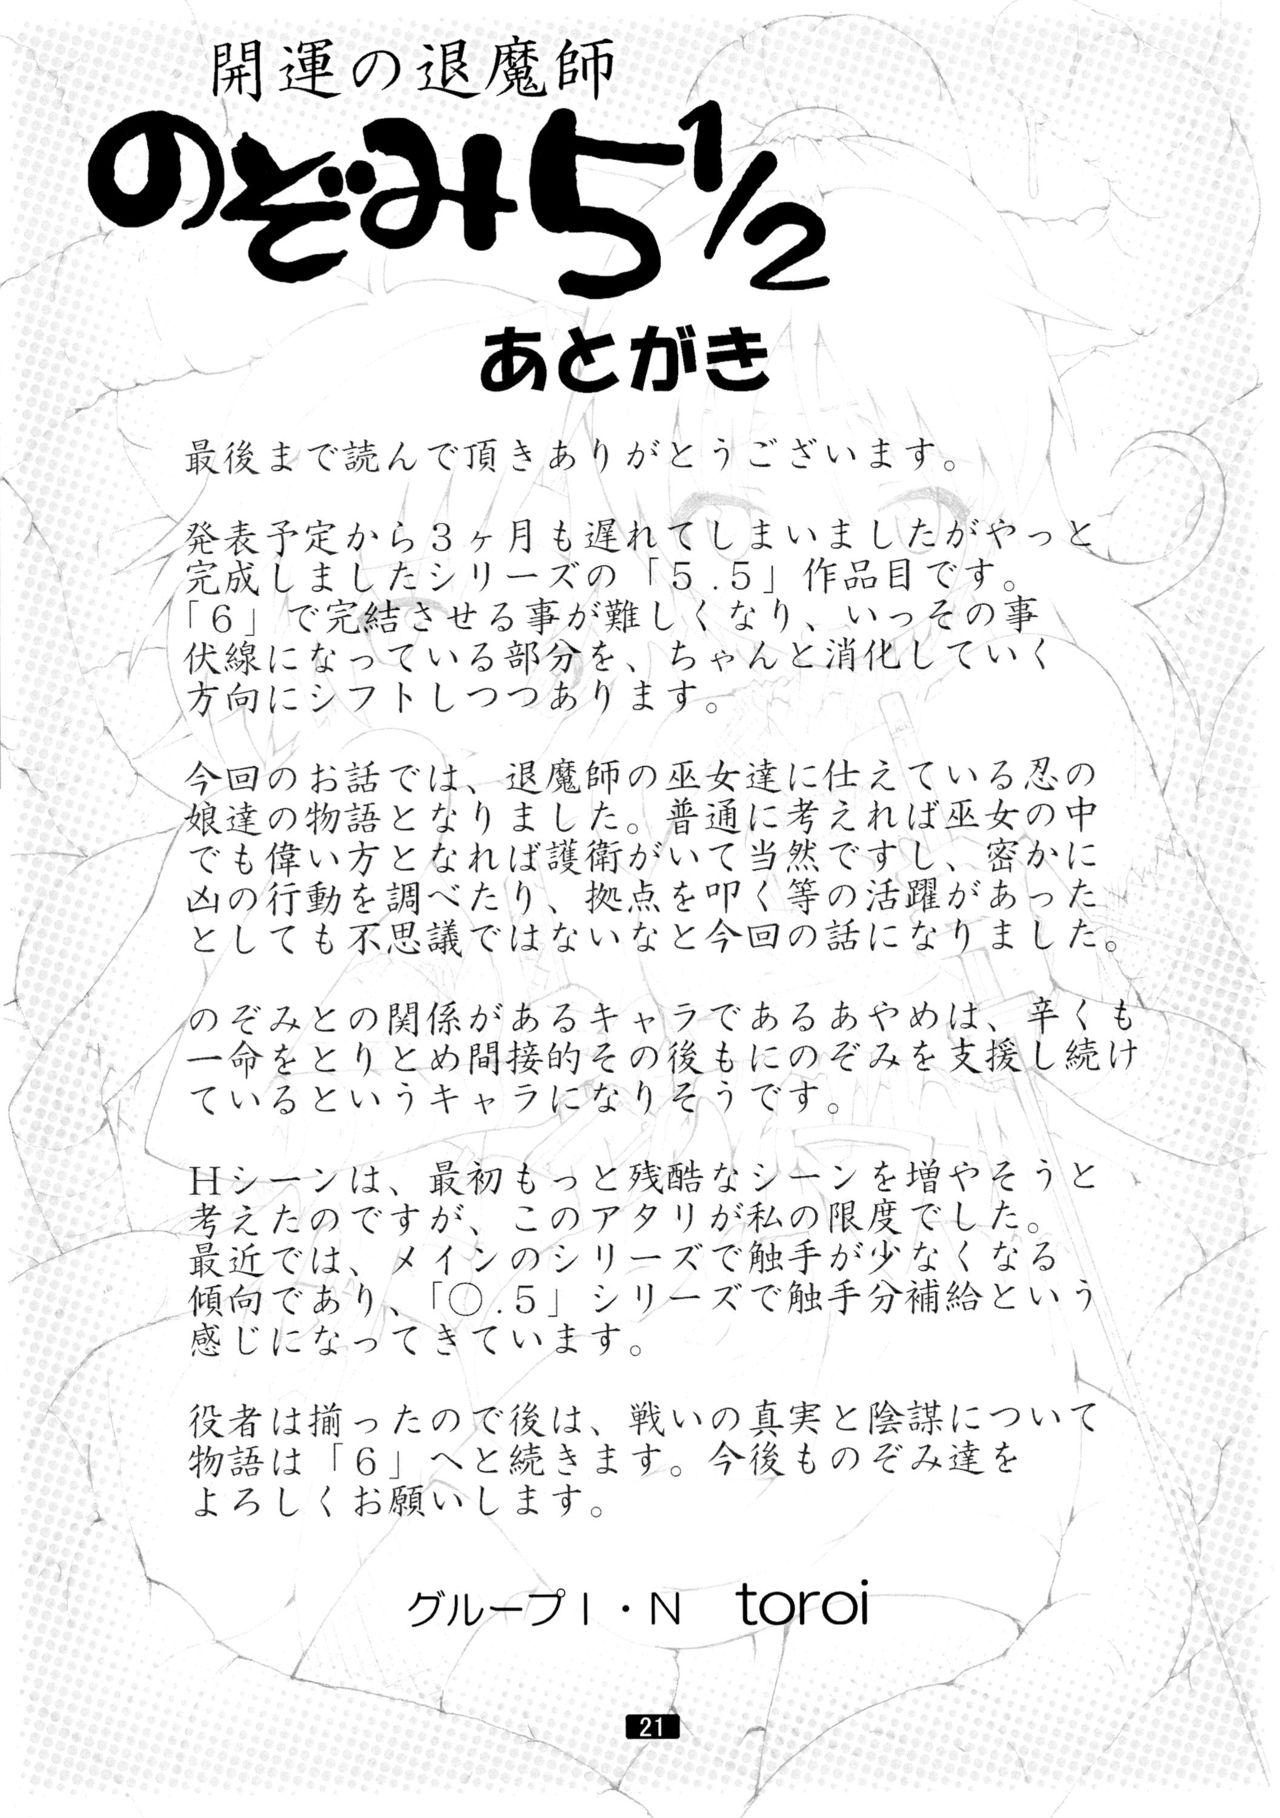 Nasty Kaiun no Taimashi Nozomi 5 1/ 2 Cuckold - Page 21